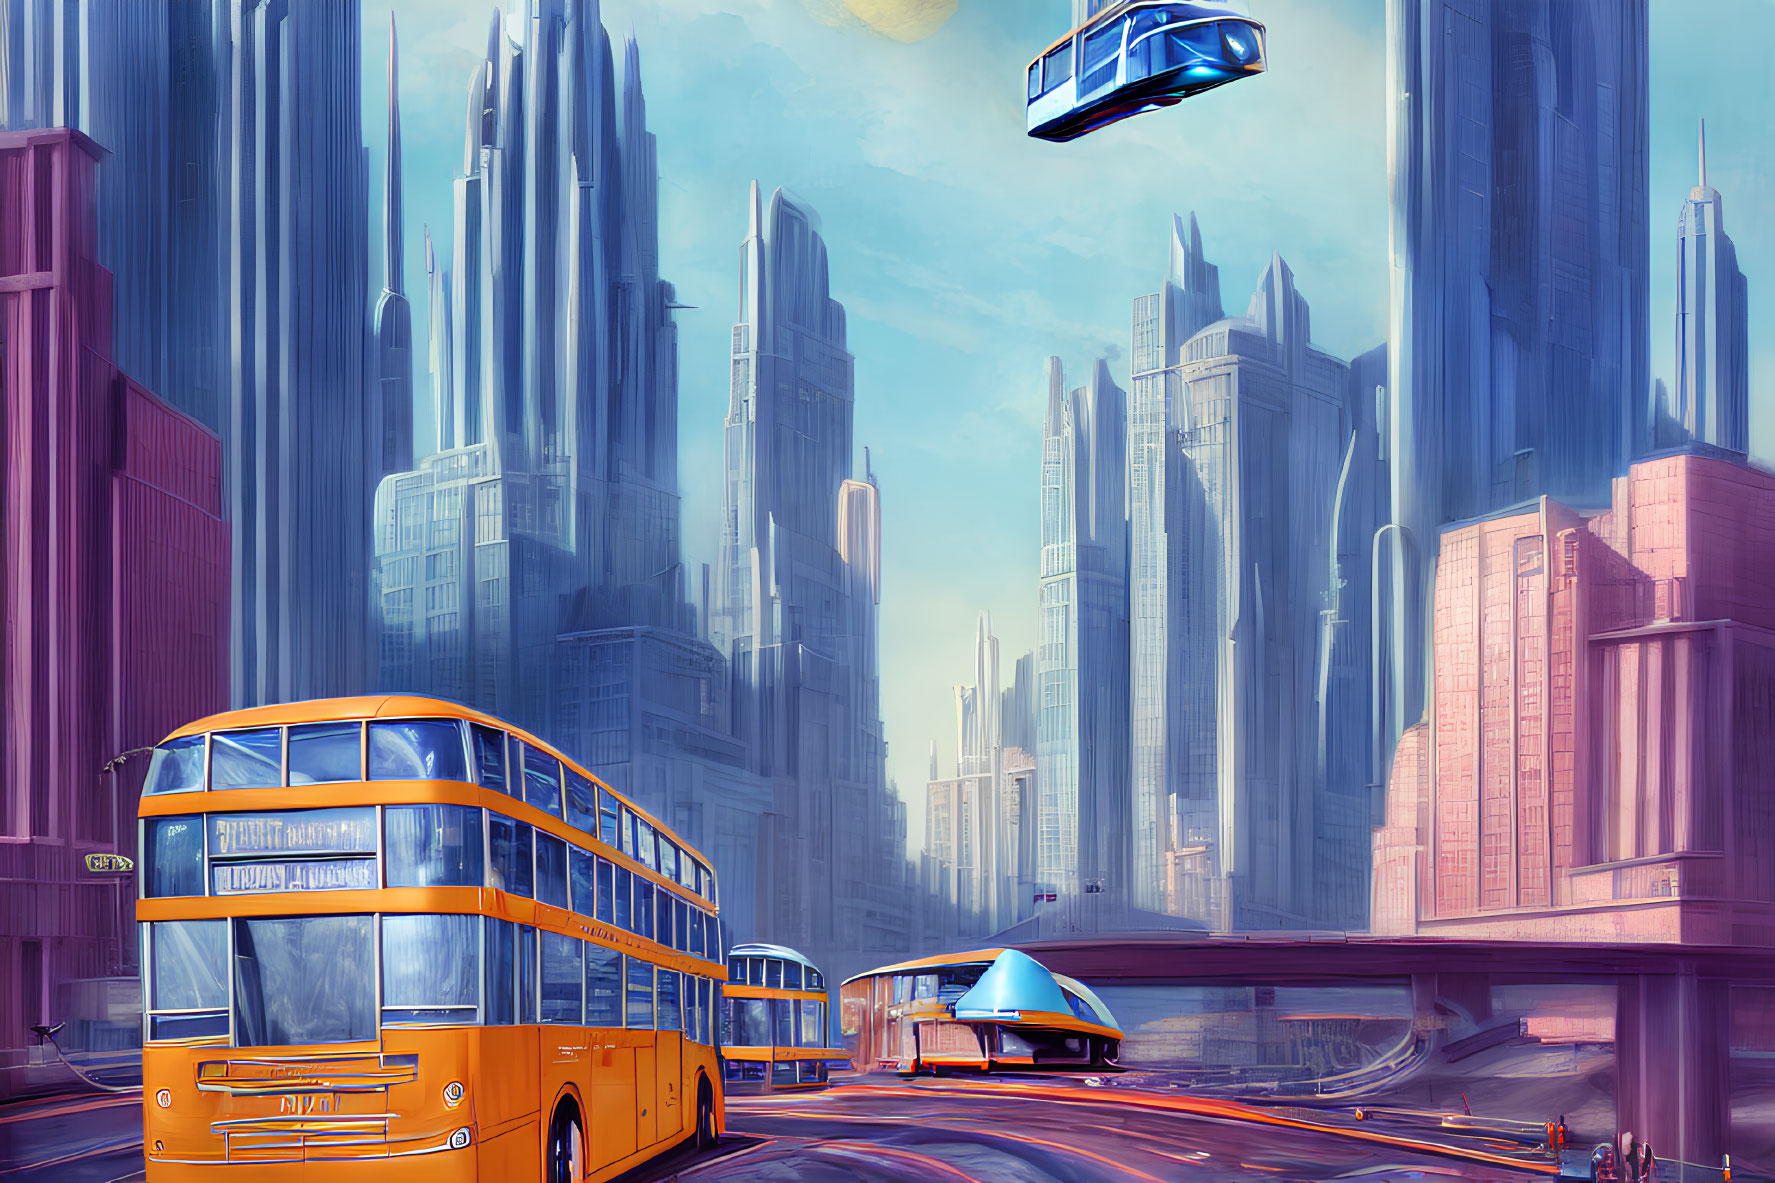 Vibrant futuristic cityscape with blue car, orange bus, and skyscrapers